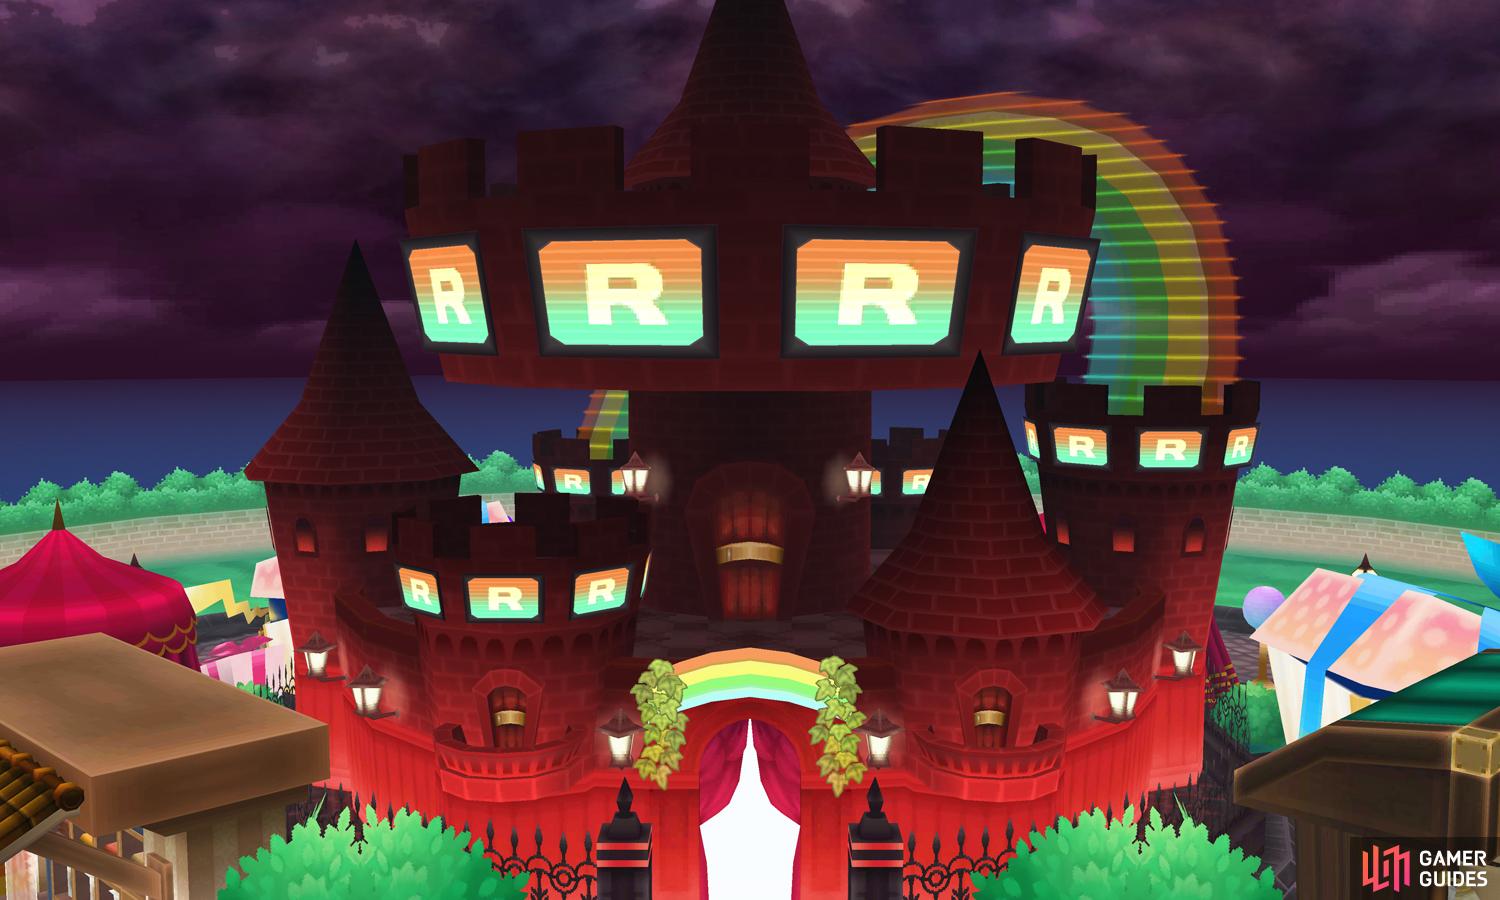 Team Rocket's Castle - Episode RR - Postgame